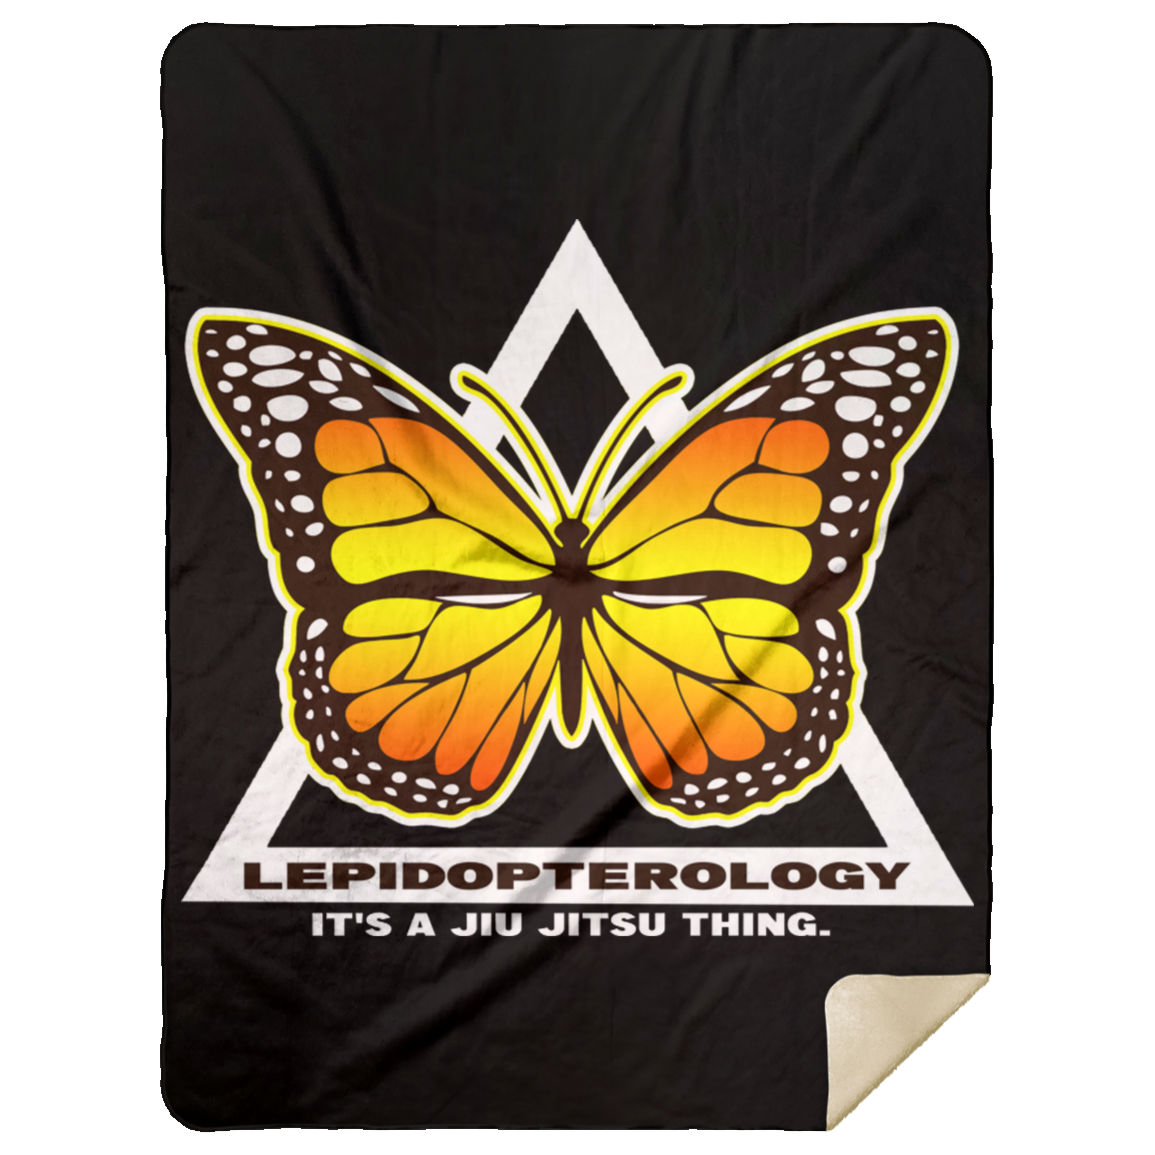 Artichoke Fight Gear Custom Design #6. Lepidopterology (Study of butterflies). Butterfly Guard. Premium Mink Sherpa Blanket 60x80